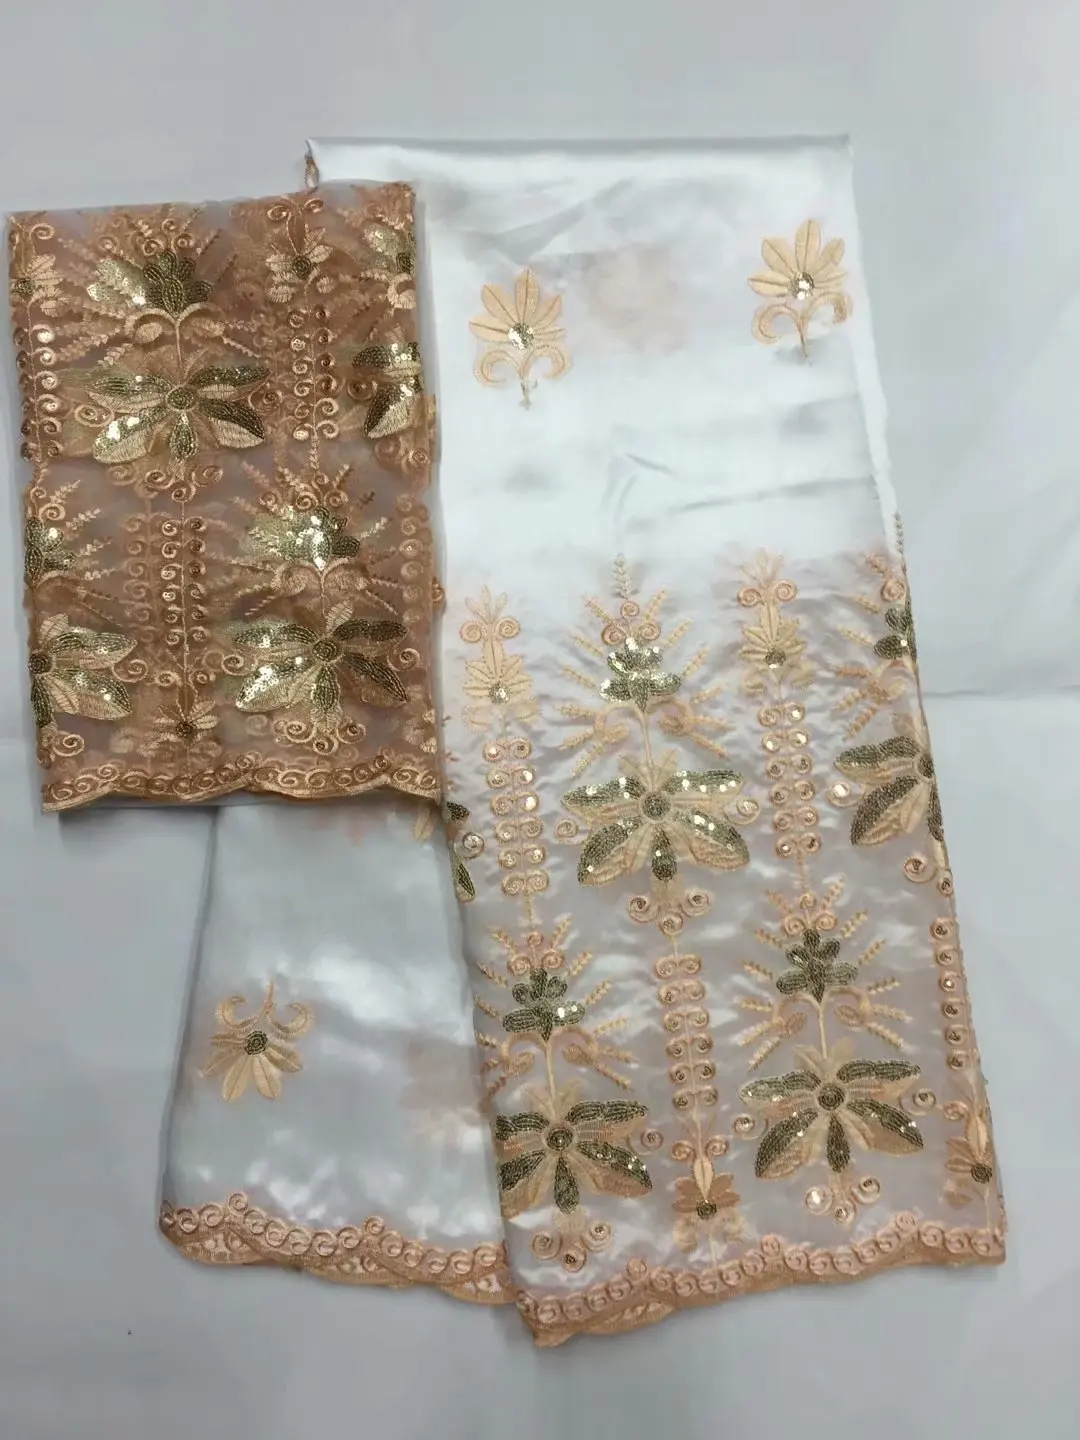 Африканский Джордж кружевной ткани с блузкой индийский персик французский блесток чистая кружевная ткань для нигерийское свадебное платье Шелковое кружево 5+ 2